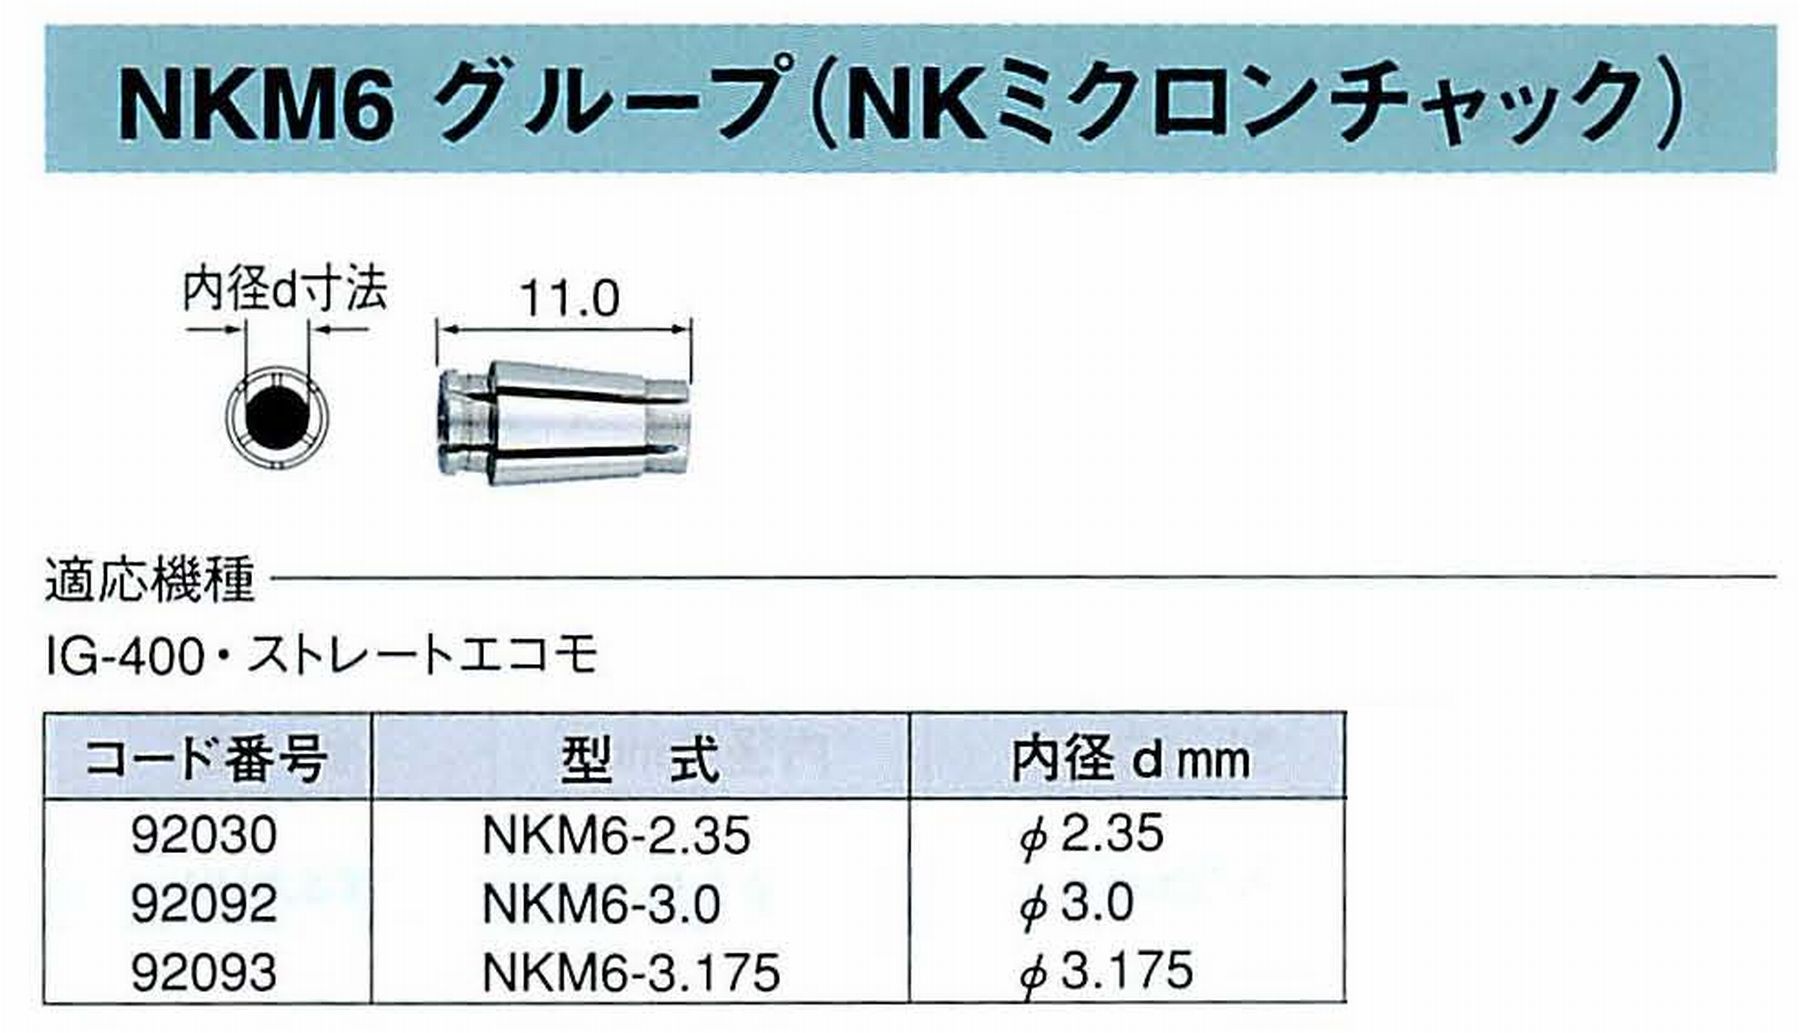 ナカニシ/NAKANISHI コレットチャック NKミクロンチャック NKM6グループ : 値打価格!, welcome to